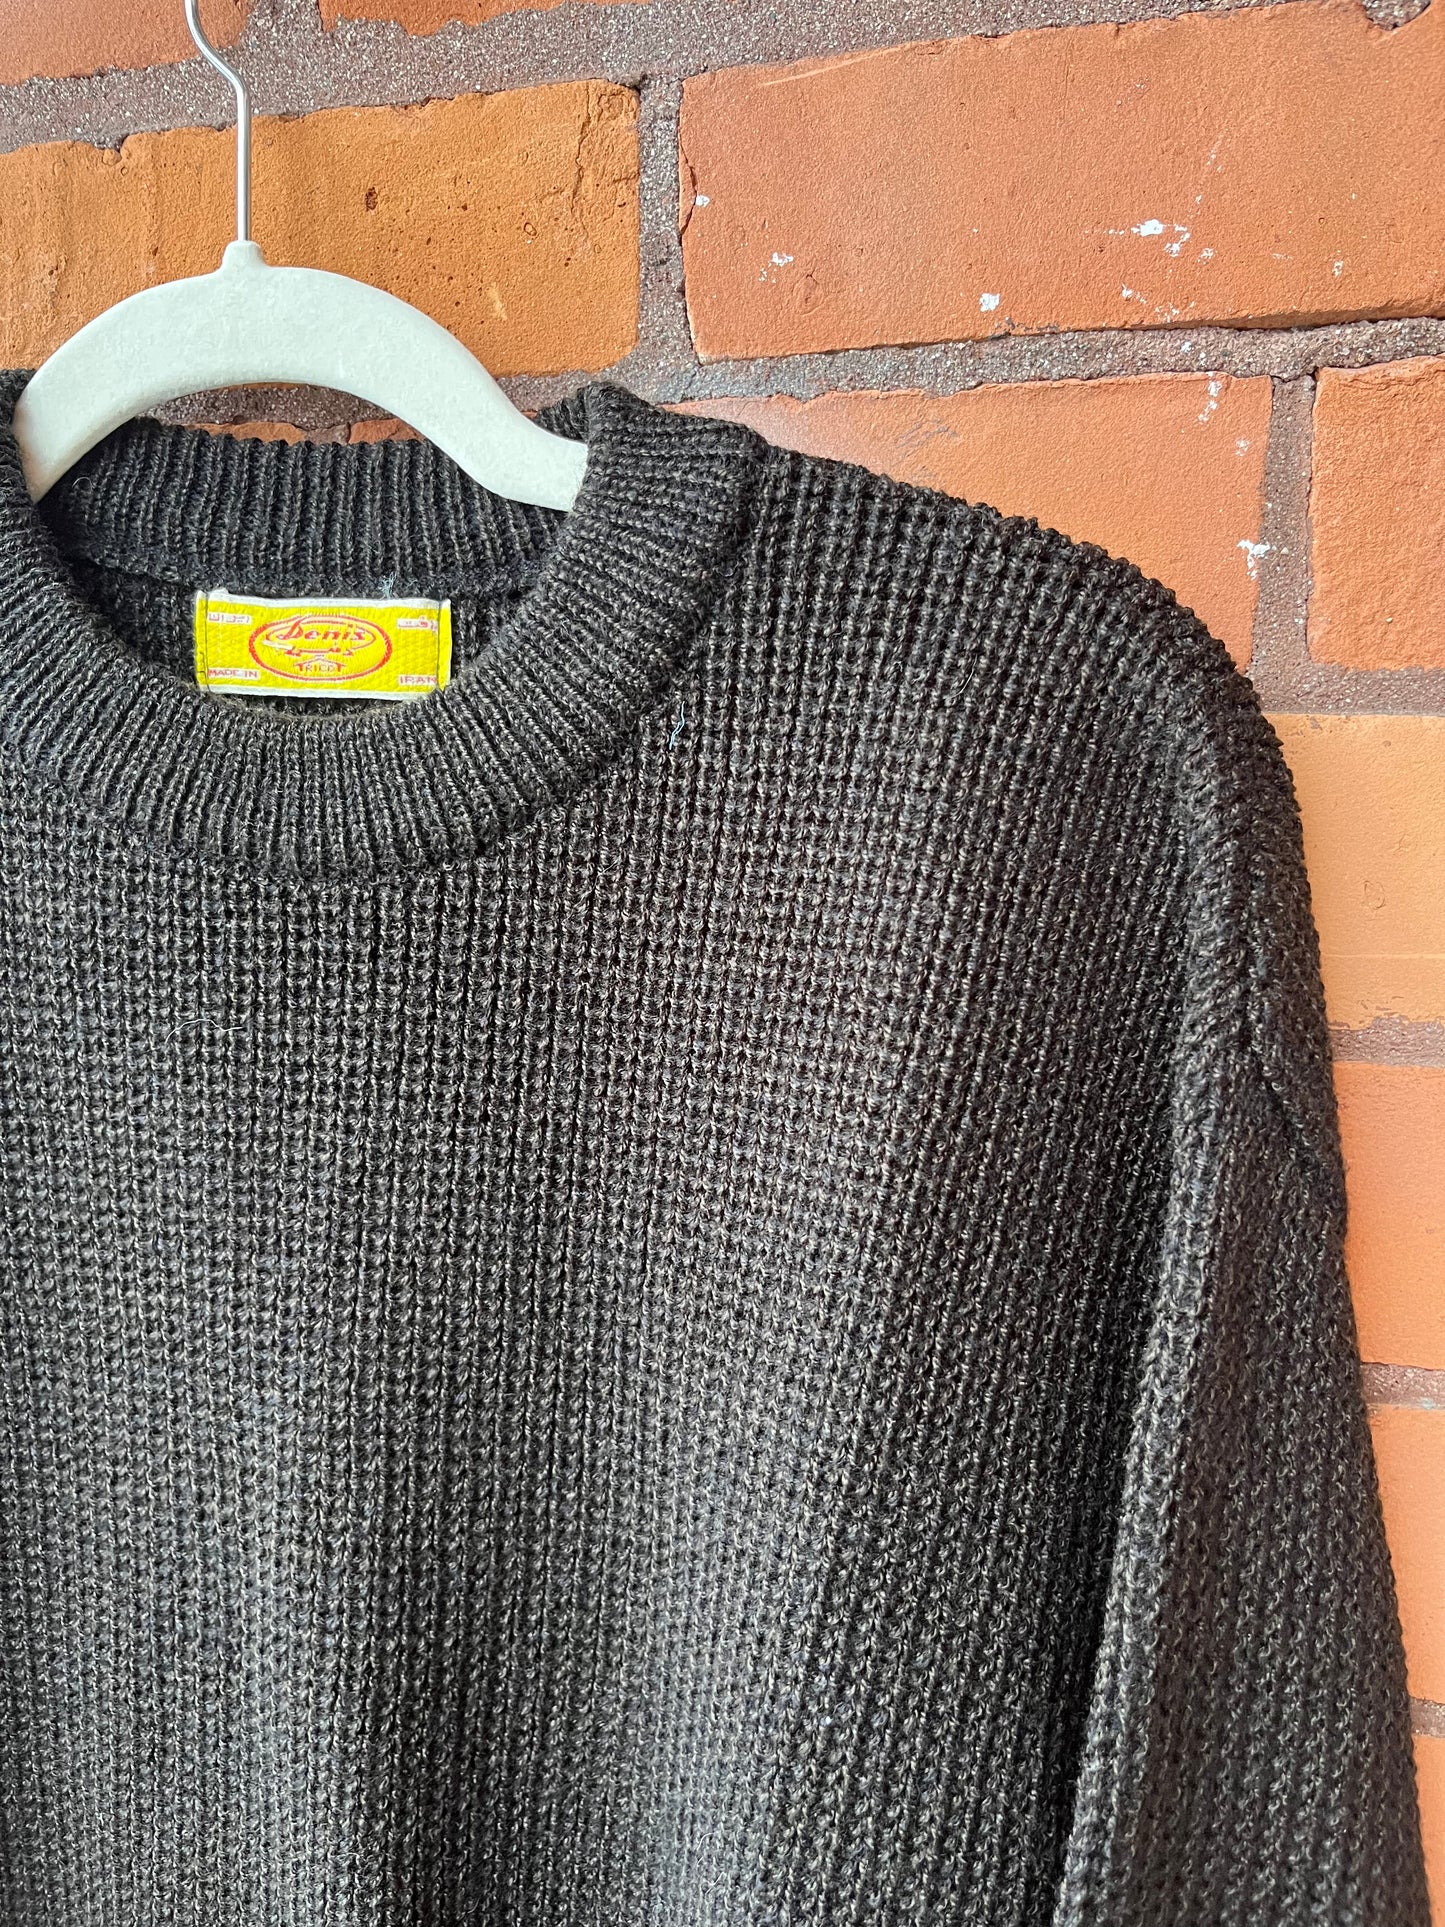 90’s Vintage Black Chunky Knit Sweater / Size XL